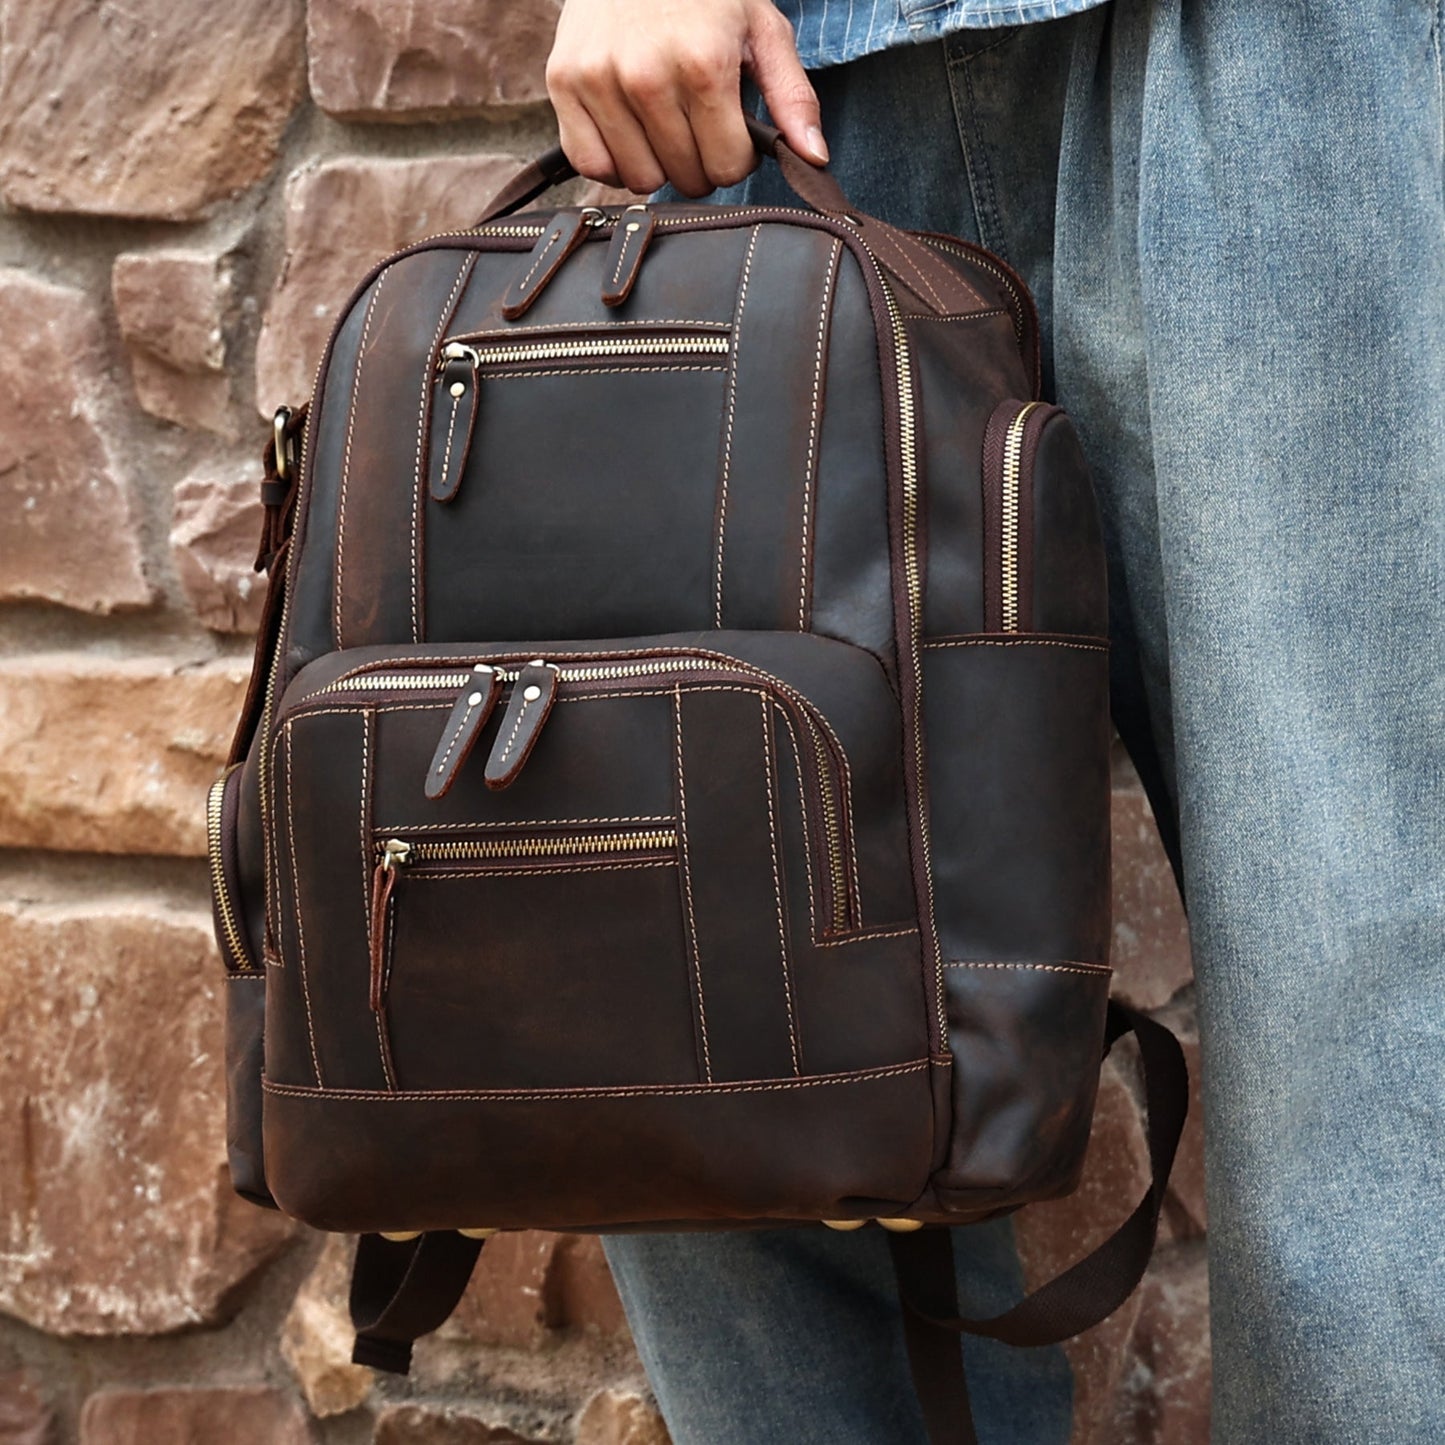 Stylish Retro Leather Knapsack designed for Leisure and Travel woyaza